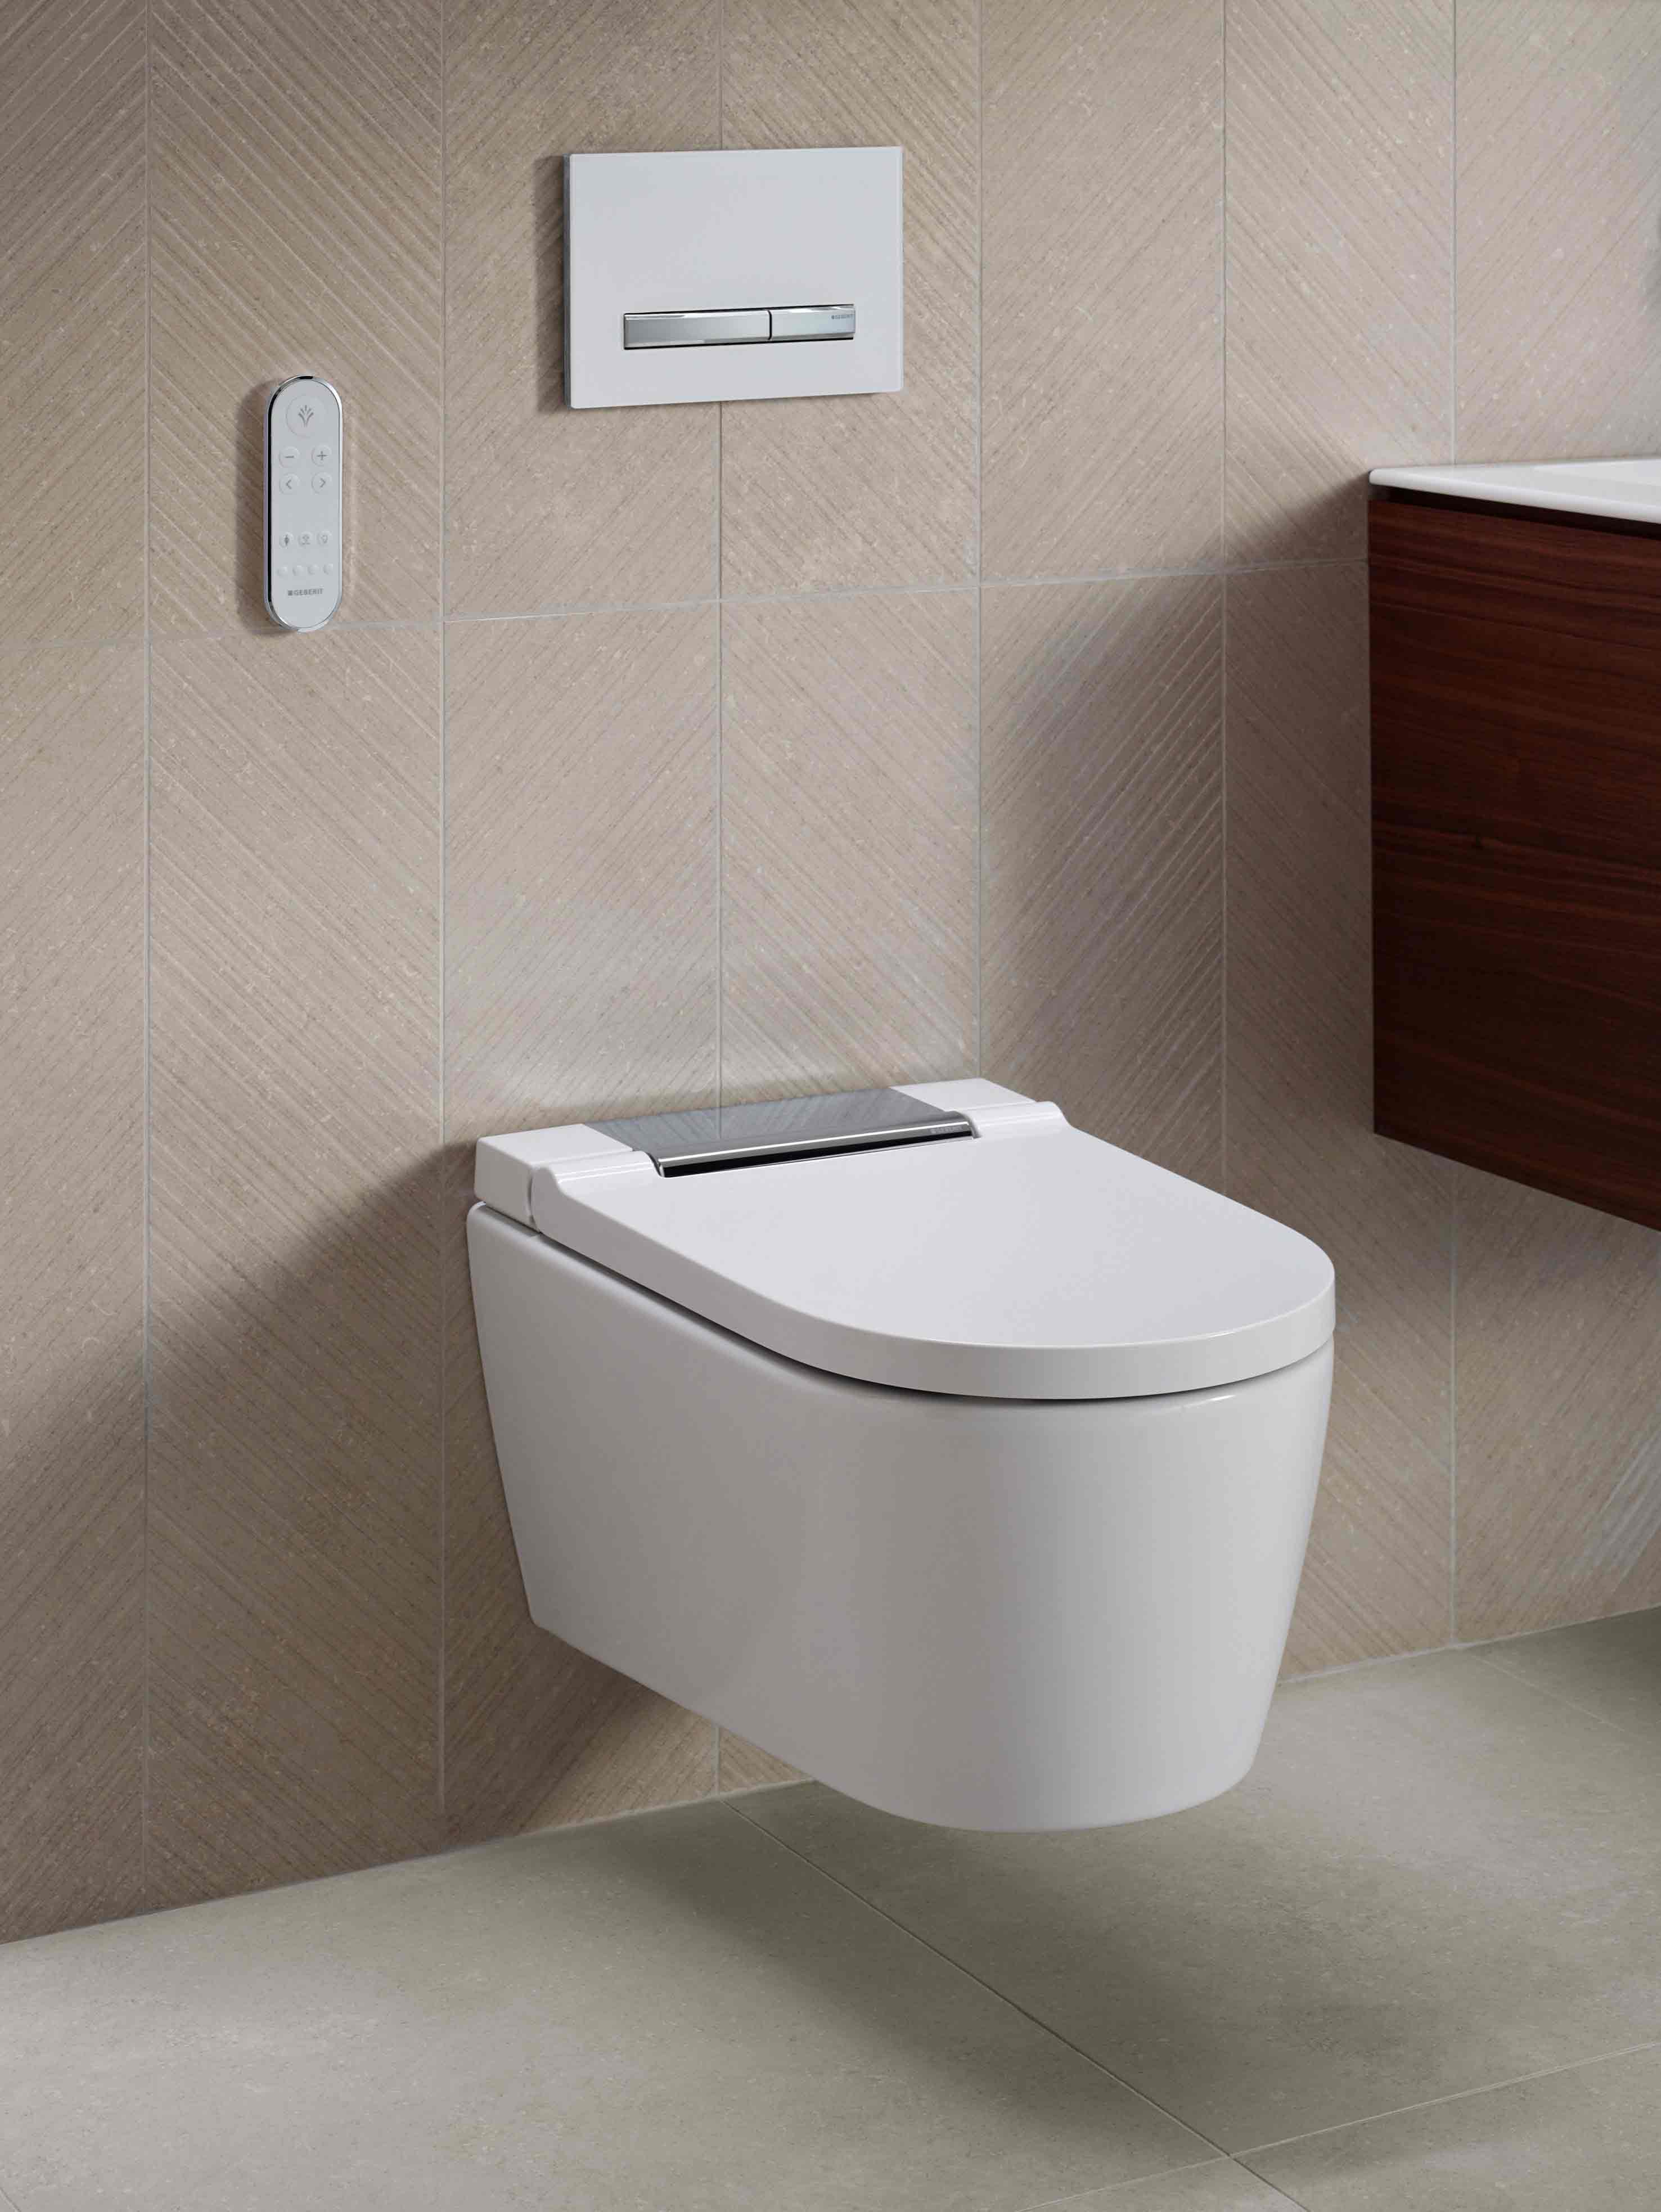 Das Dusch-WC AquaClean Sela überzeugt mit klarer Formensprache.